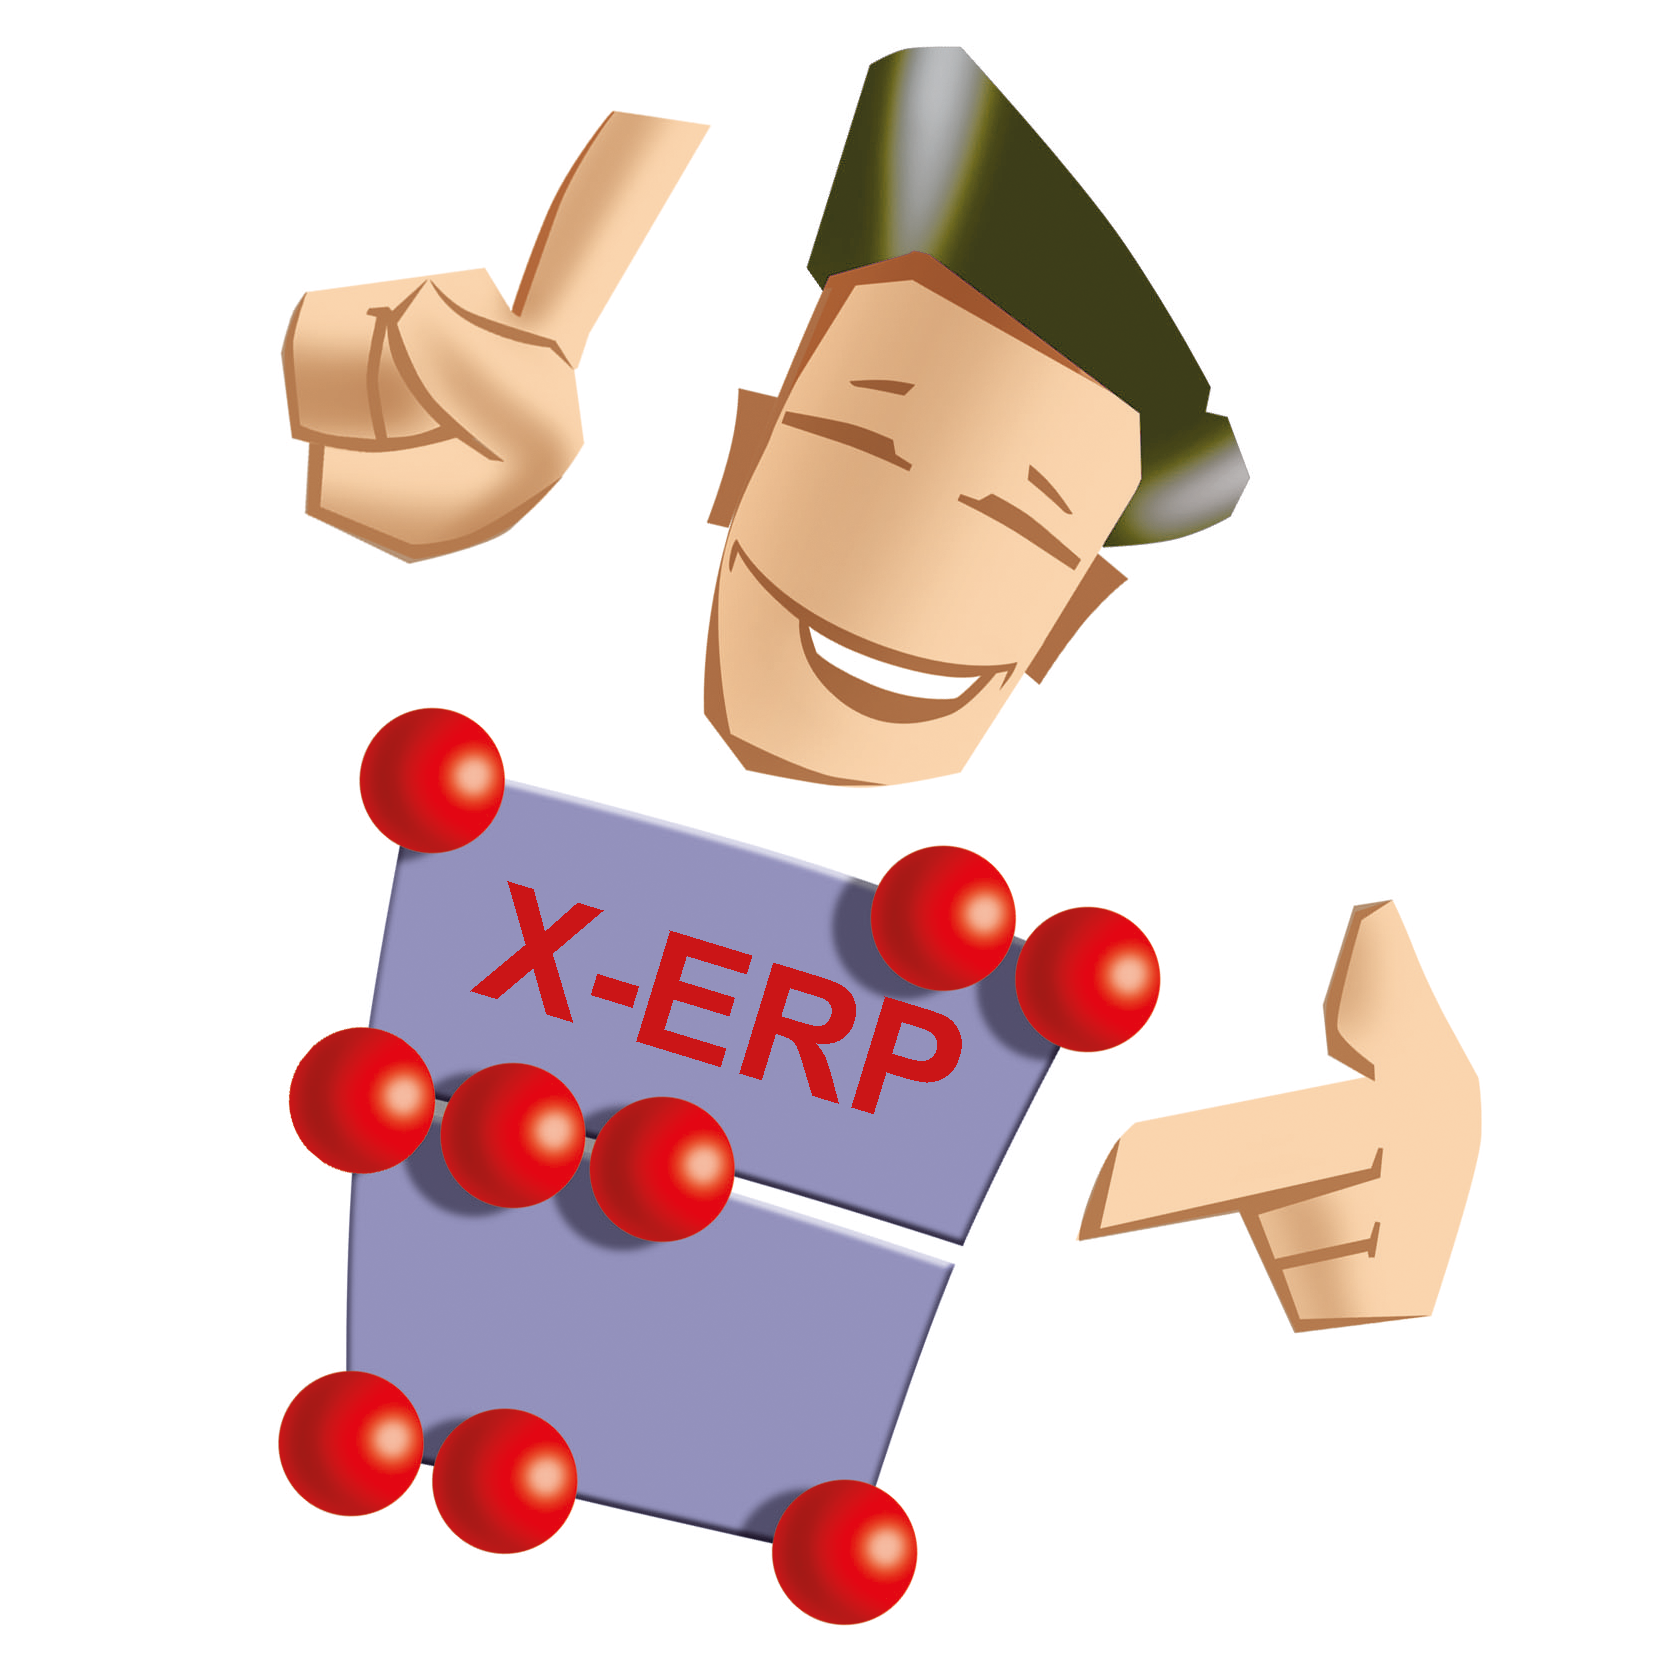 X-ERP